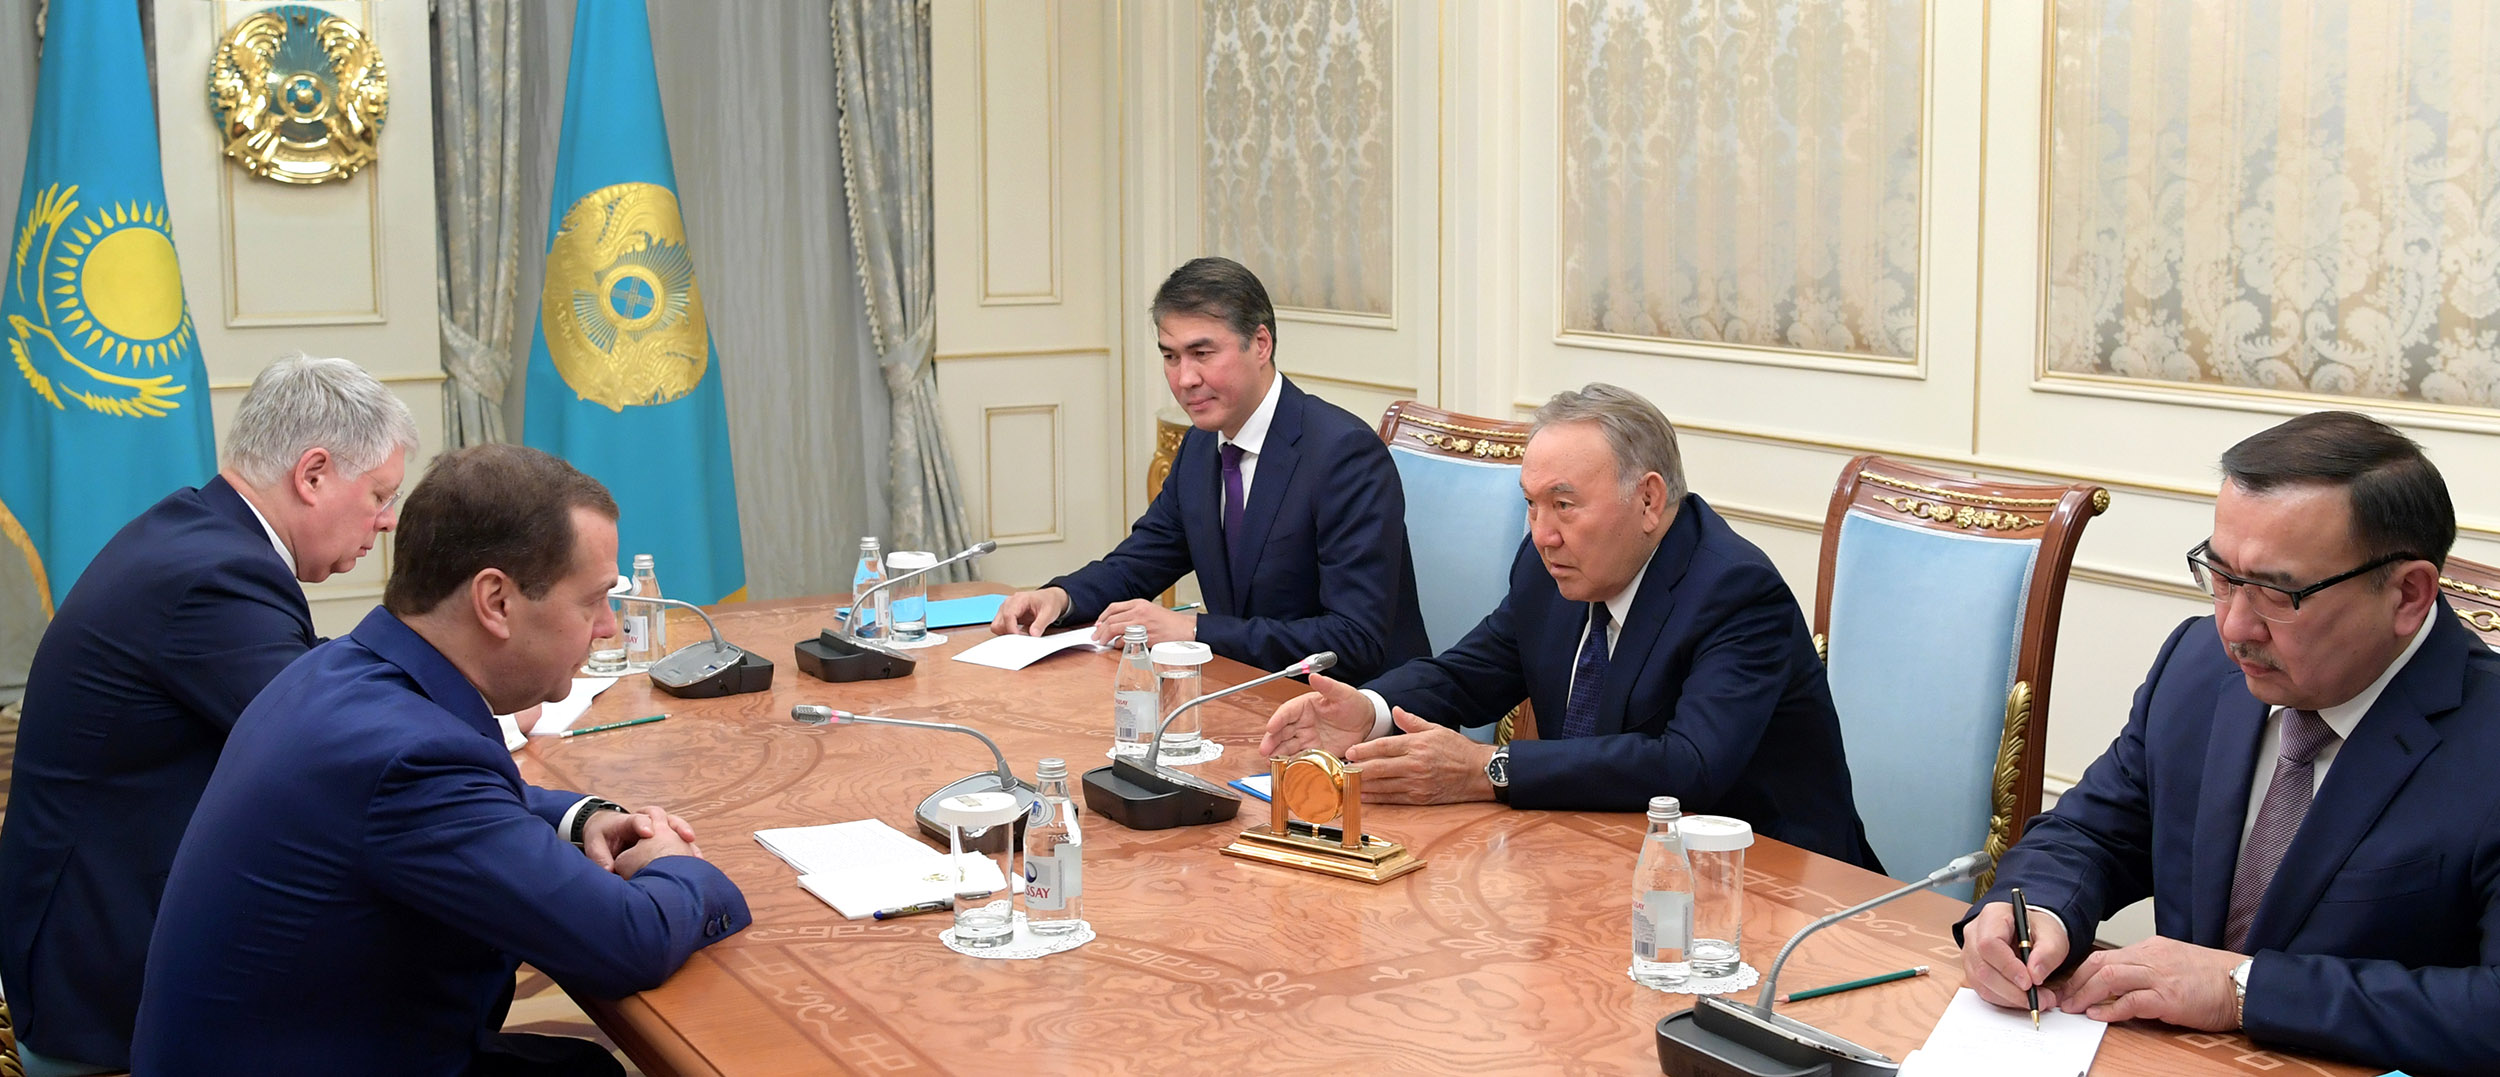 Нурсултан Назарбаев назвал отношения с Россией образцовыми 